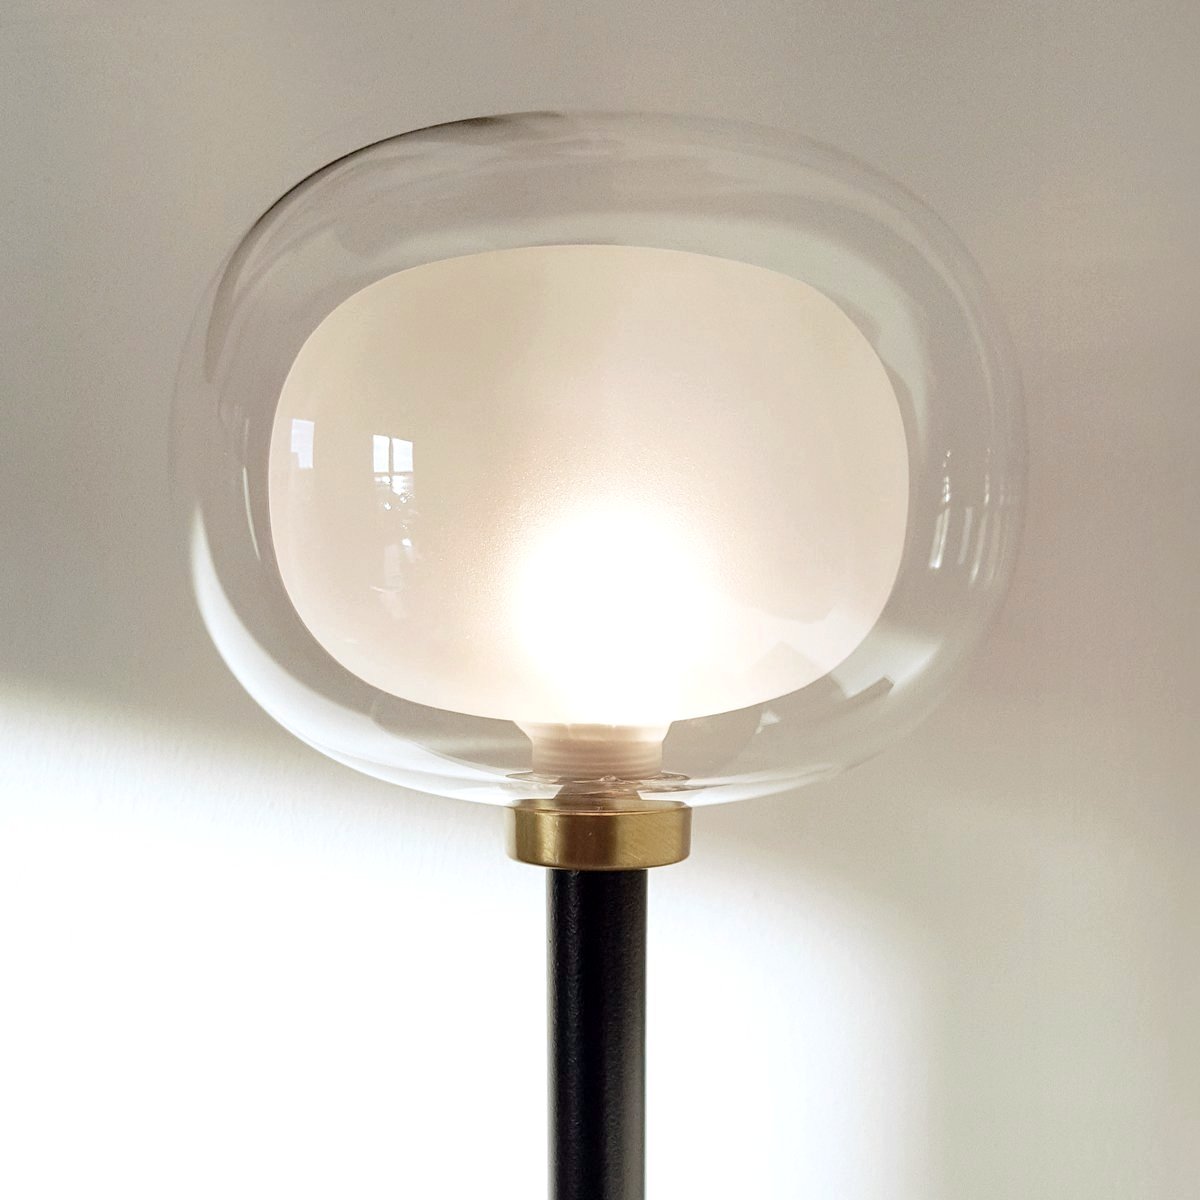 Nabila Table Lamp | Urban Avenue